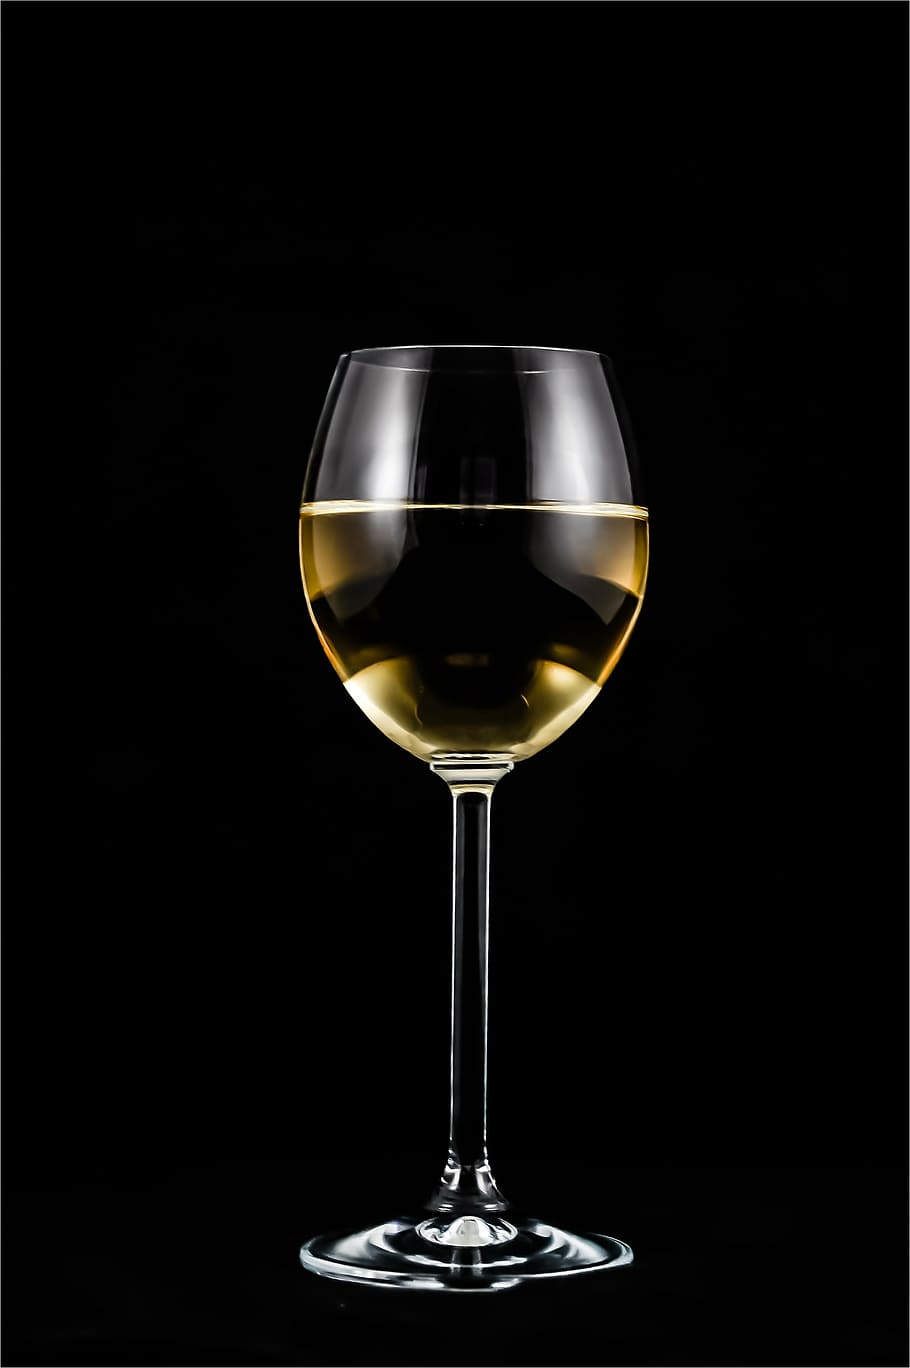 写真, ガラス, 白, 黒, 背景, グラスワイン, ワイン, アルコール, 結婚式, グラス